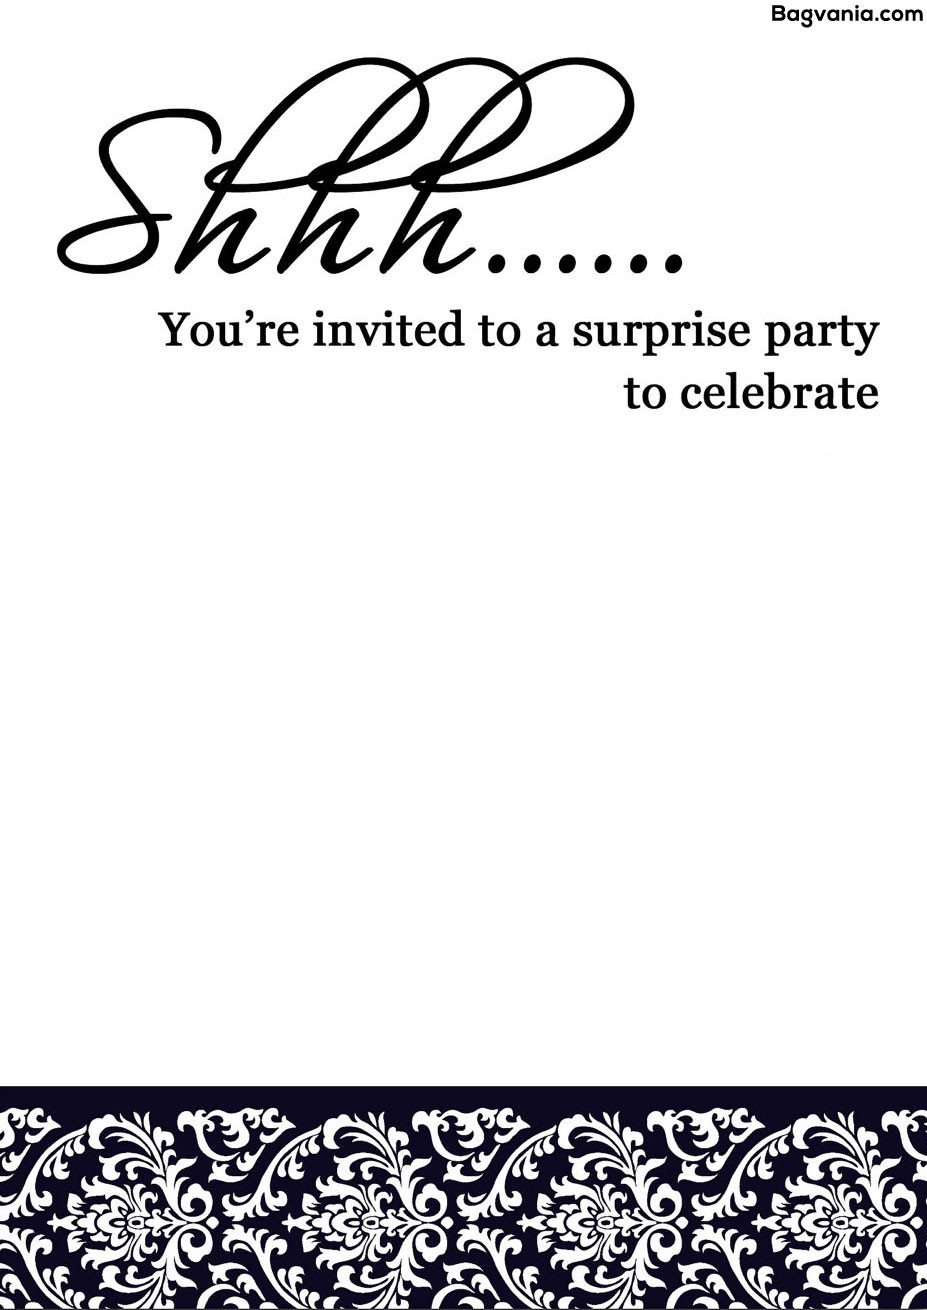 Free Printable Surprise Birthday Party Invitations
 Free Printable Surprise Birthday Invitations – Bagvania